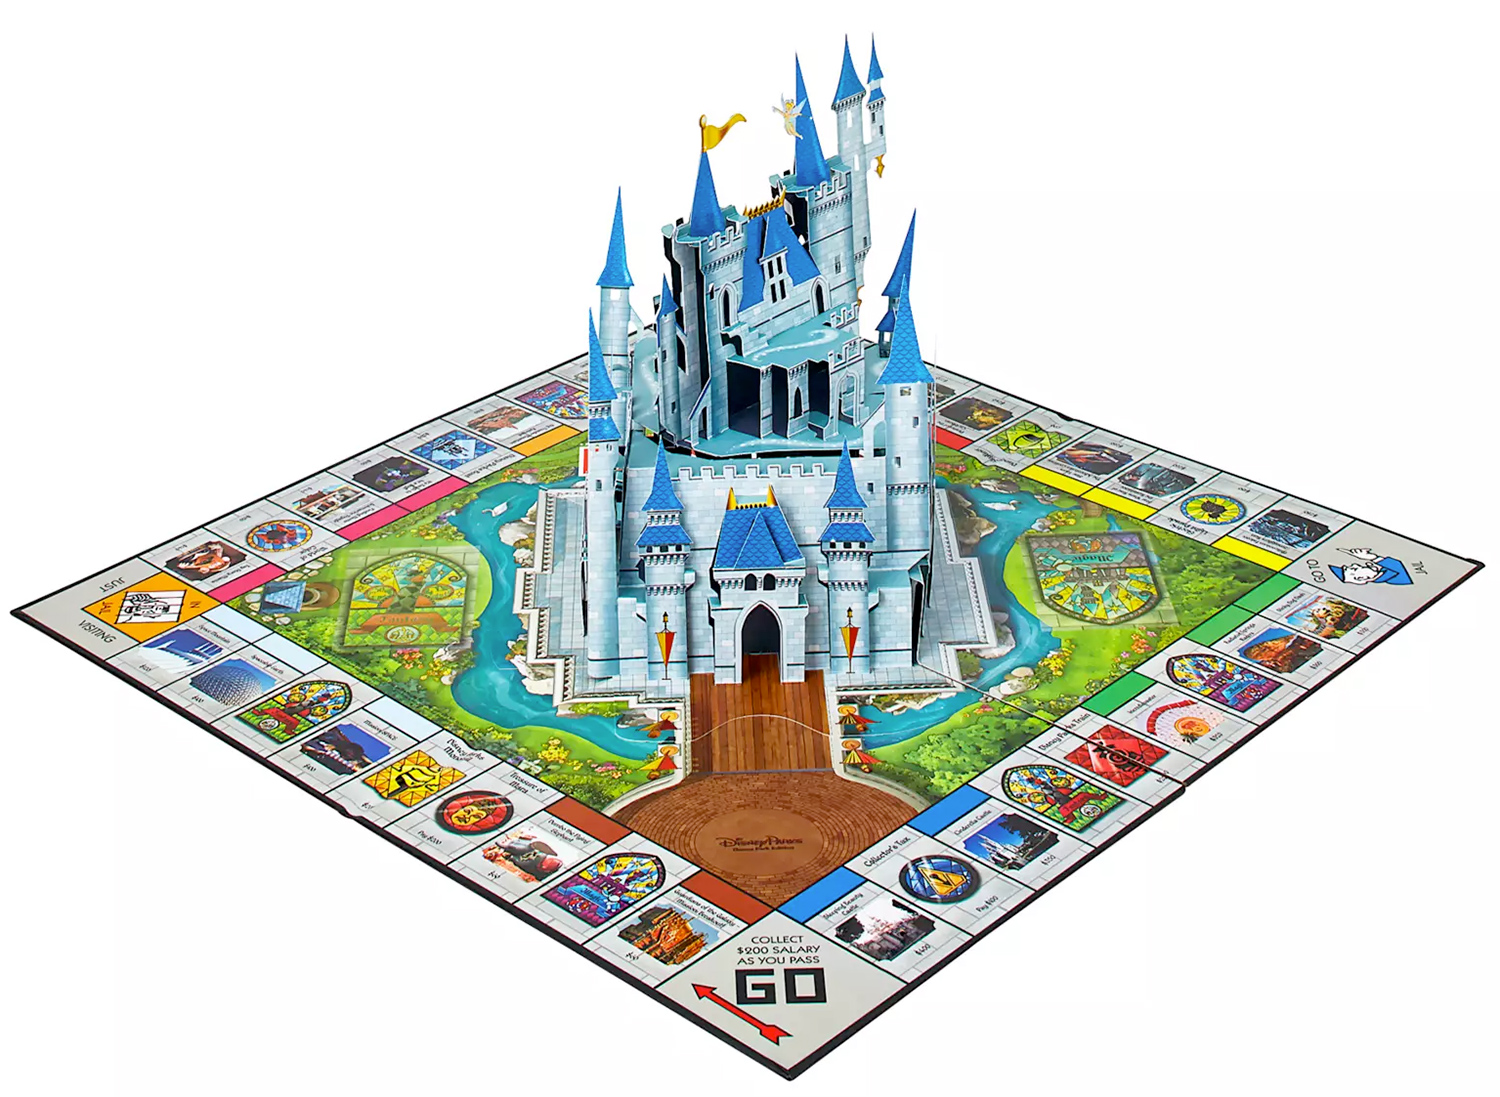 Jogo Monopoly dos Parques Disney « Blog de Brinquedo